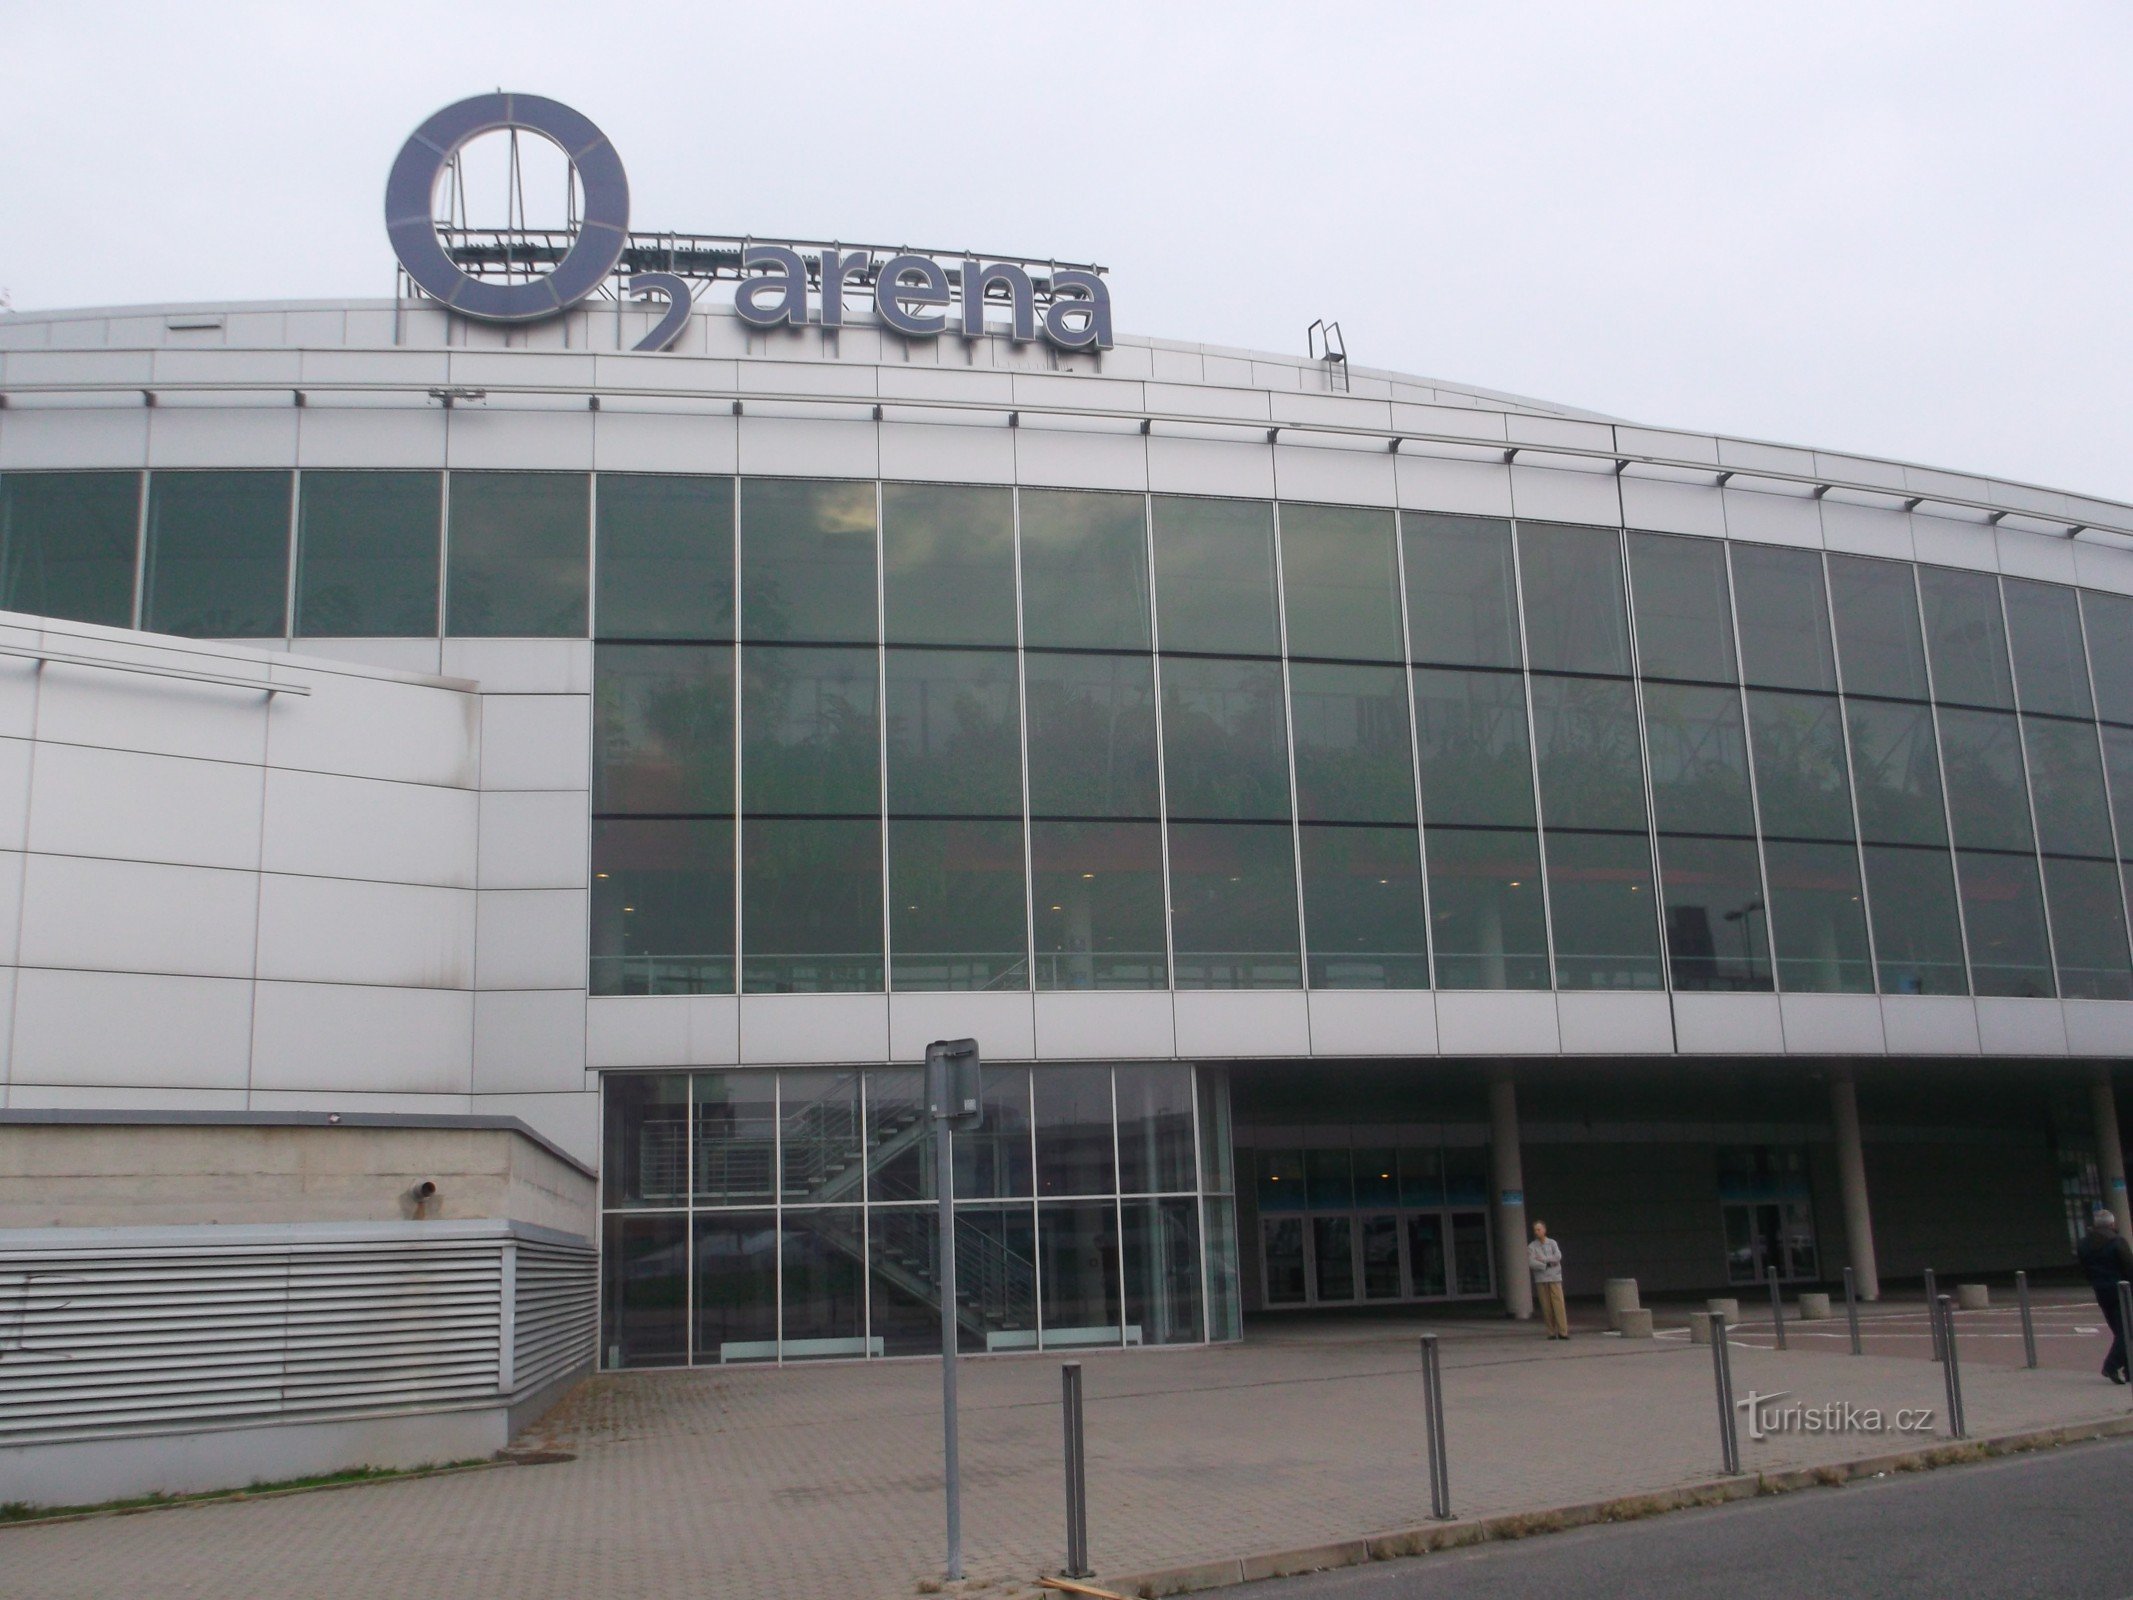 Arena O2